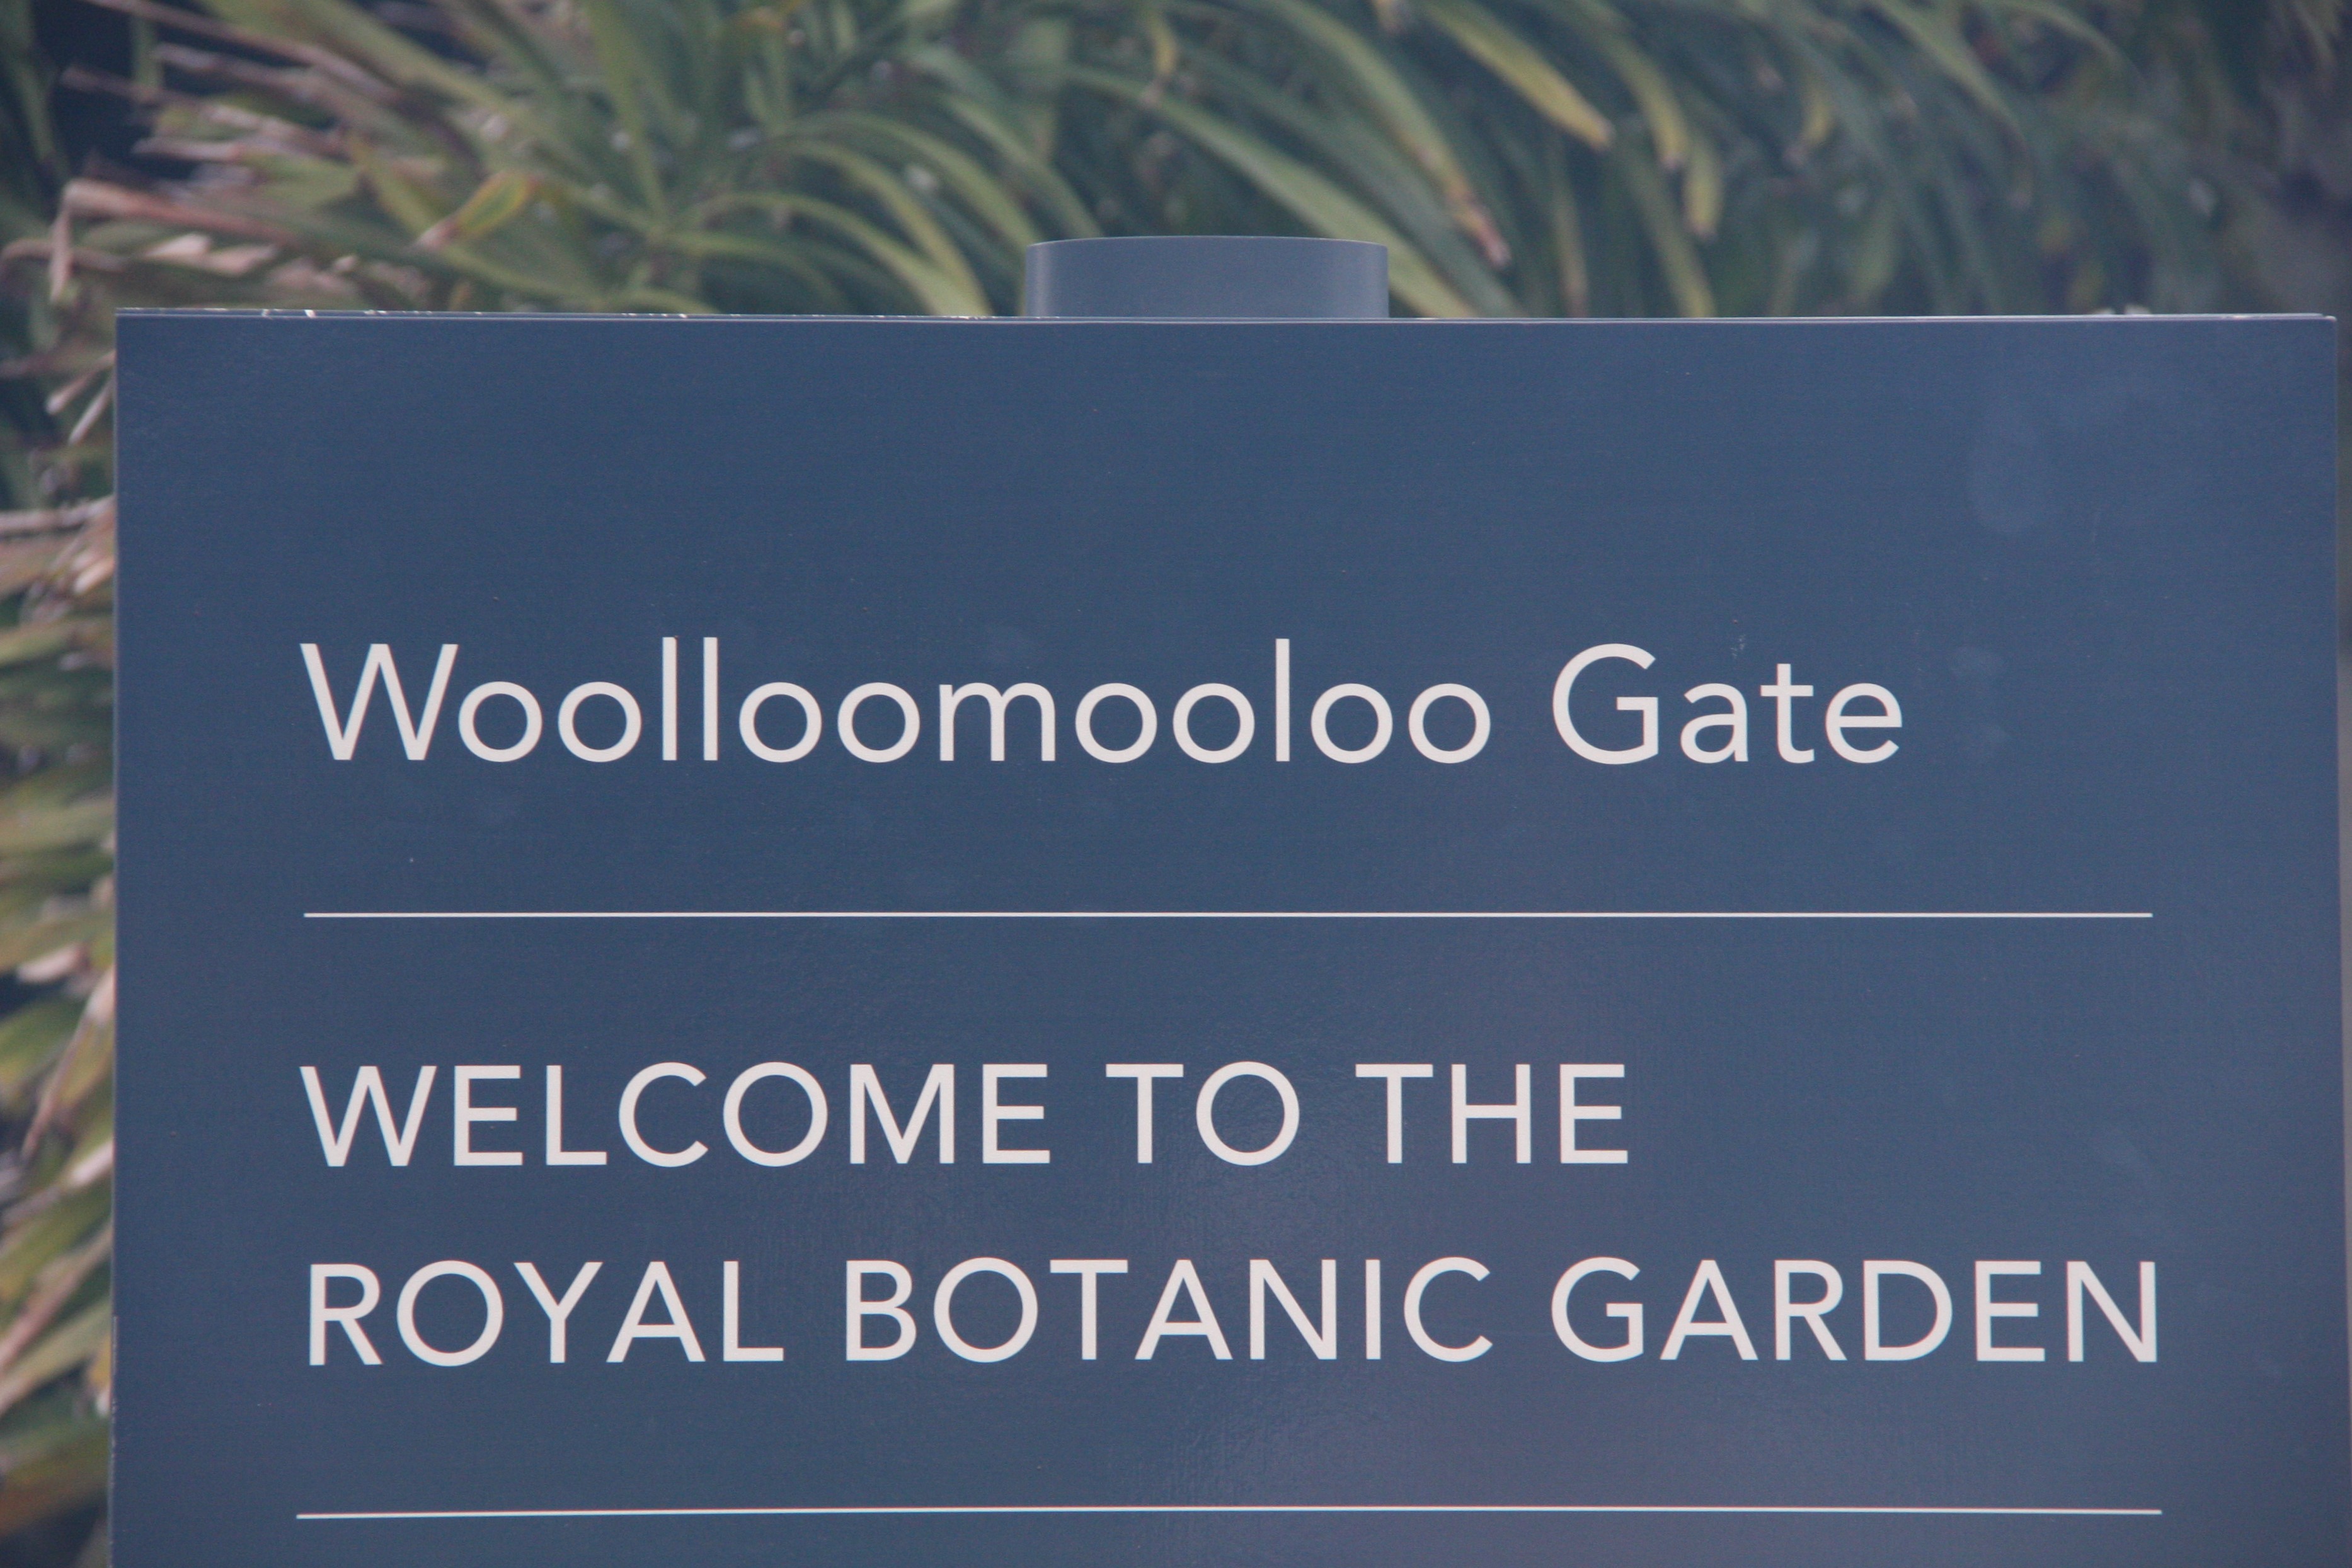 Itt a bizonyíték, hogy nem kitaláció a Woolloomoolo név